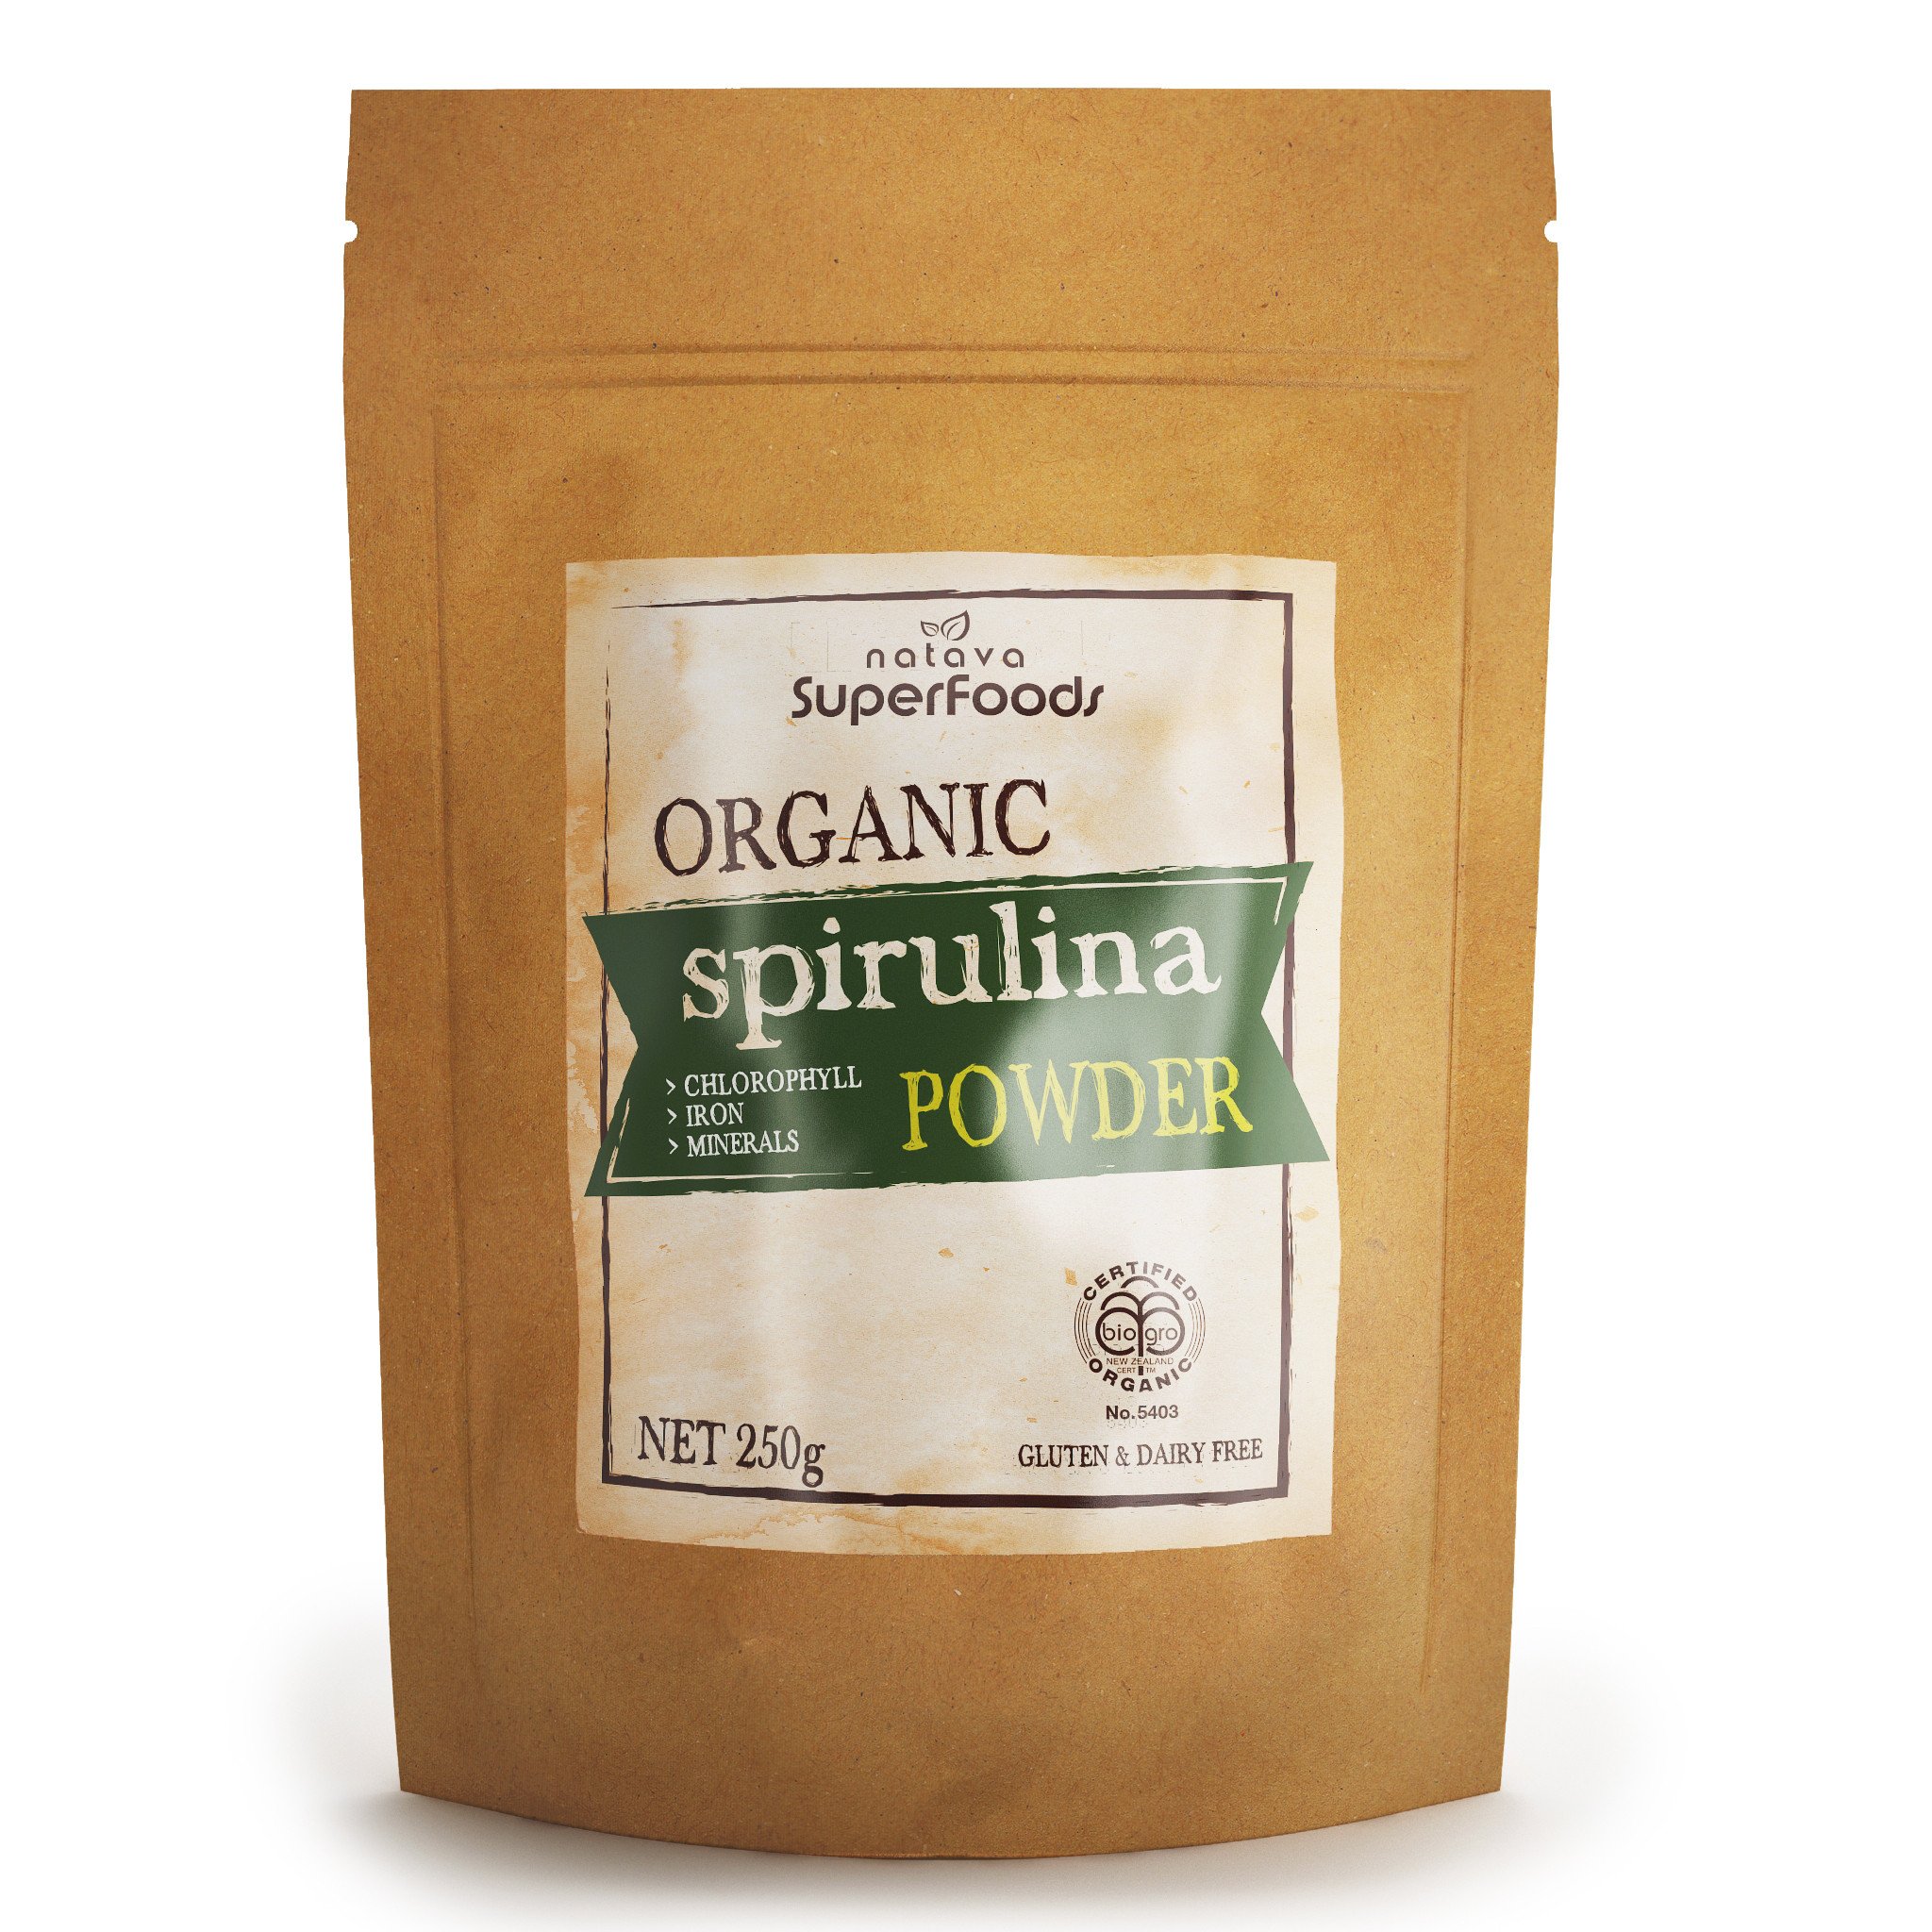 Natava Superfoods - Organic Spirulina Powder.